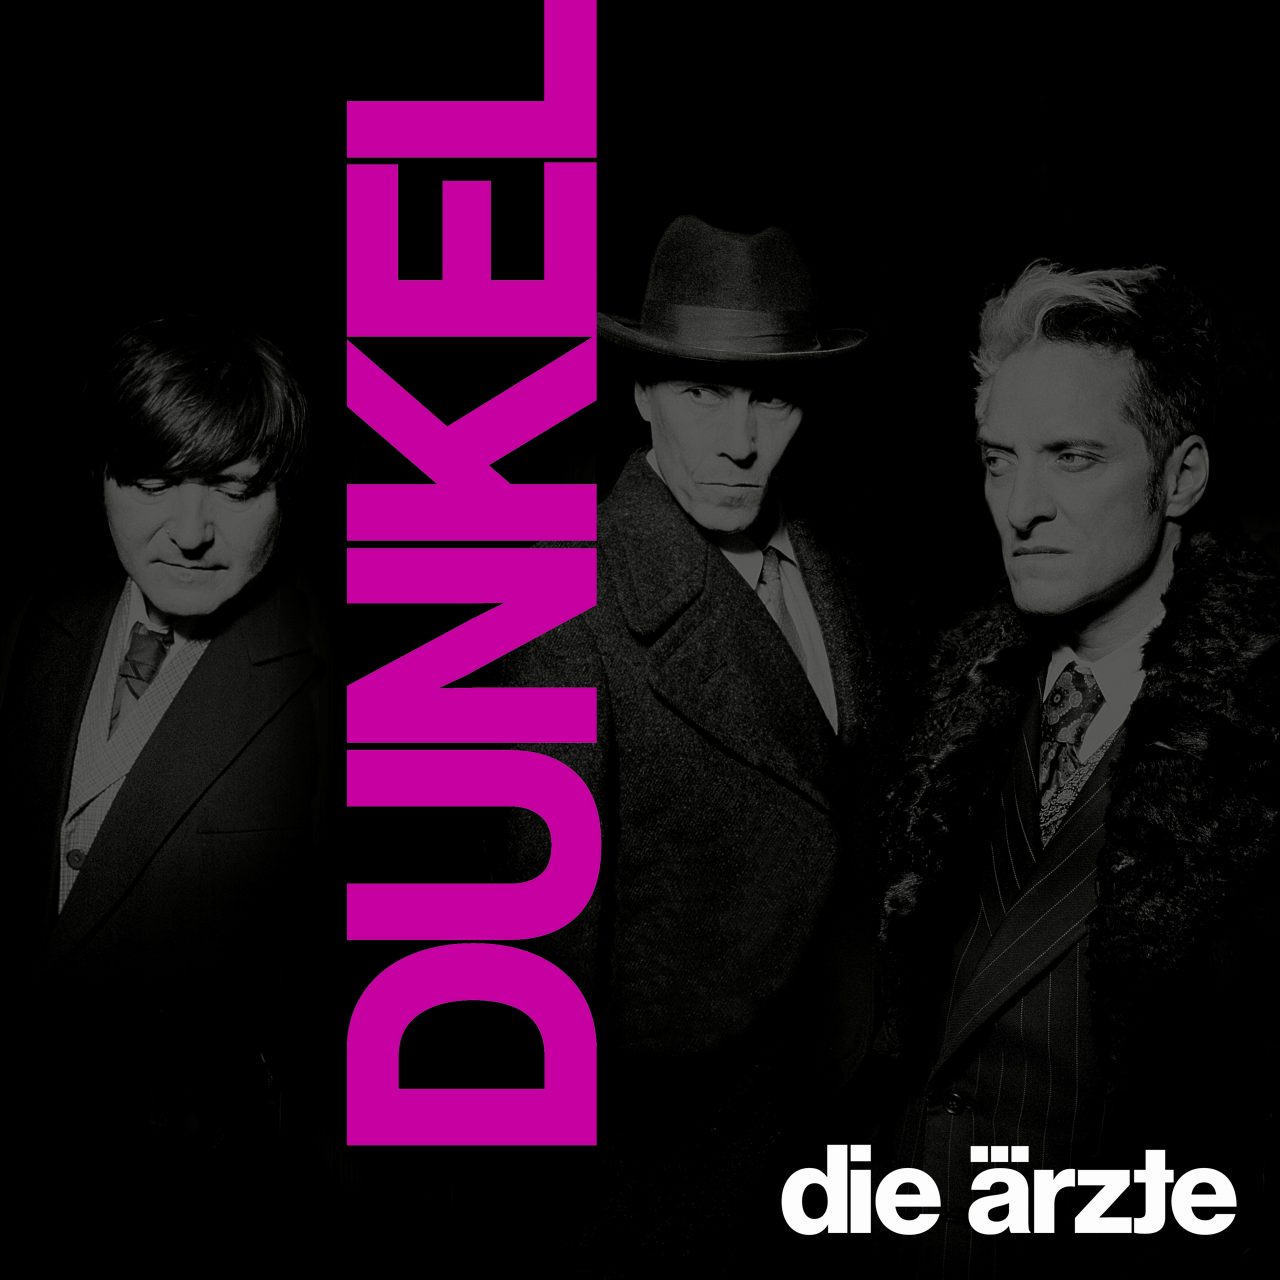 Das Albumcover "Dunkel" von Die Ärzte ist schwarz-weiß. Es zeigt die drei Bandmitglieder im Porträt. Vertikal steht in fetten, pinken Buchstaben "Dunkel".